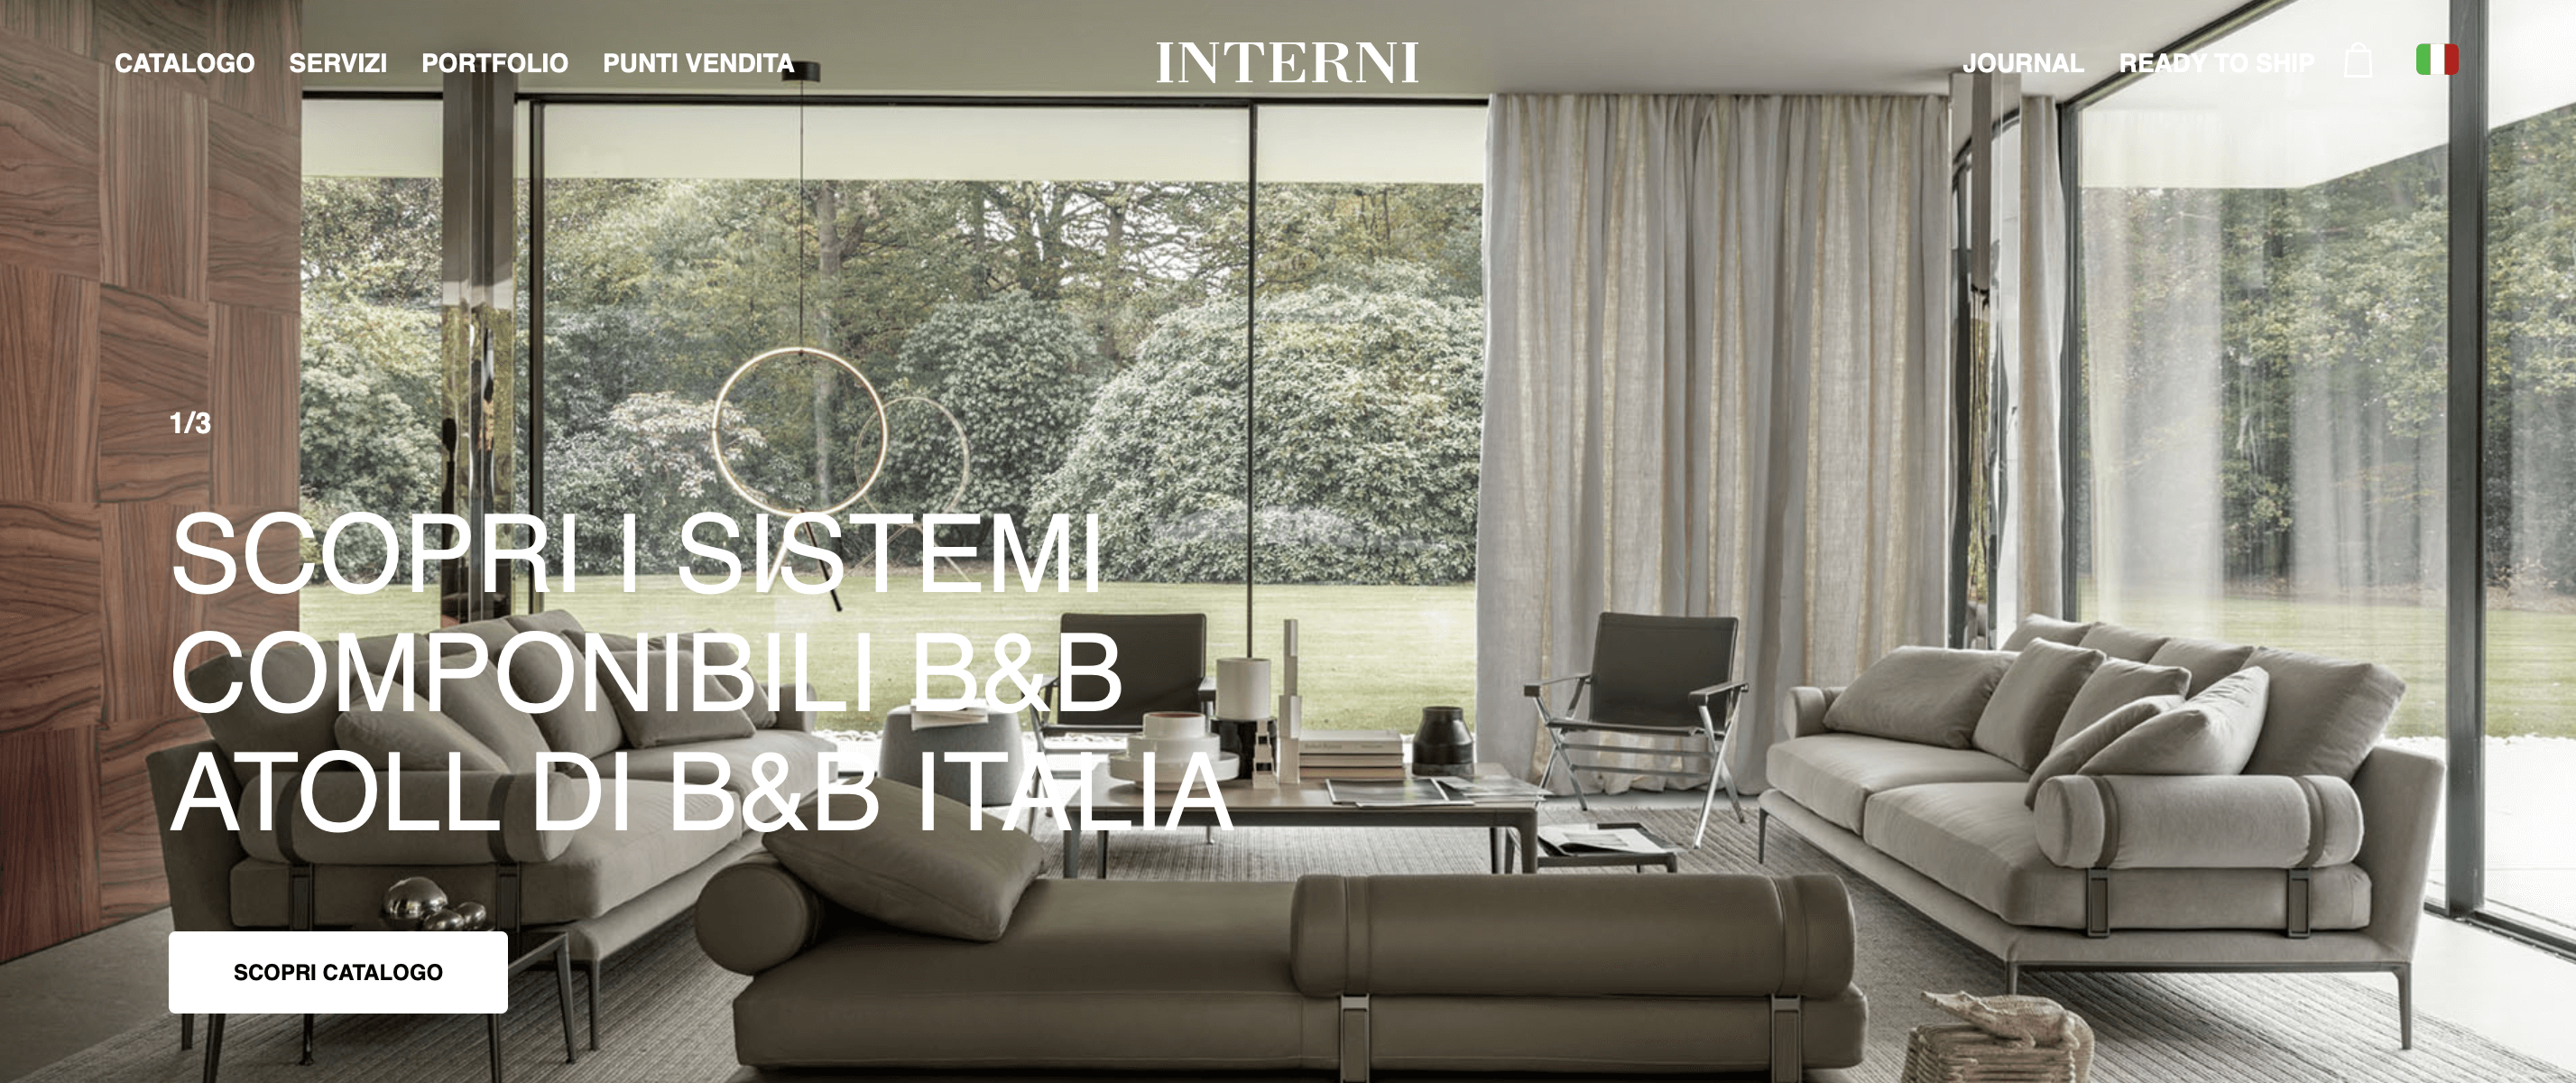 意大利高端家具集团 Lifestyle Design 收购高端家具生产及分销商 Interni 多数股权